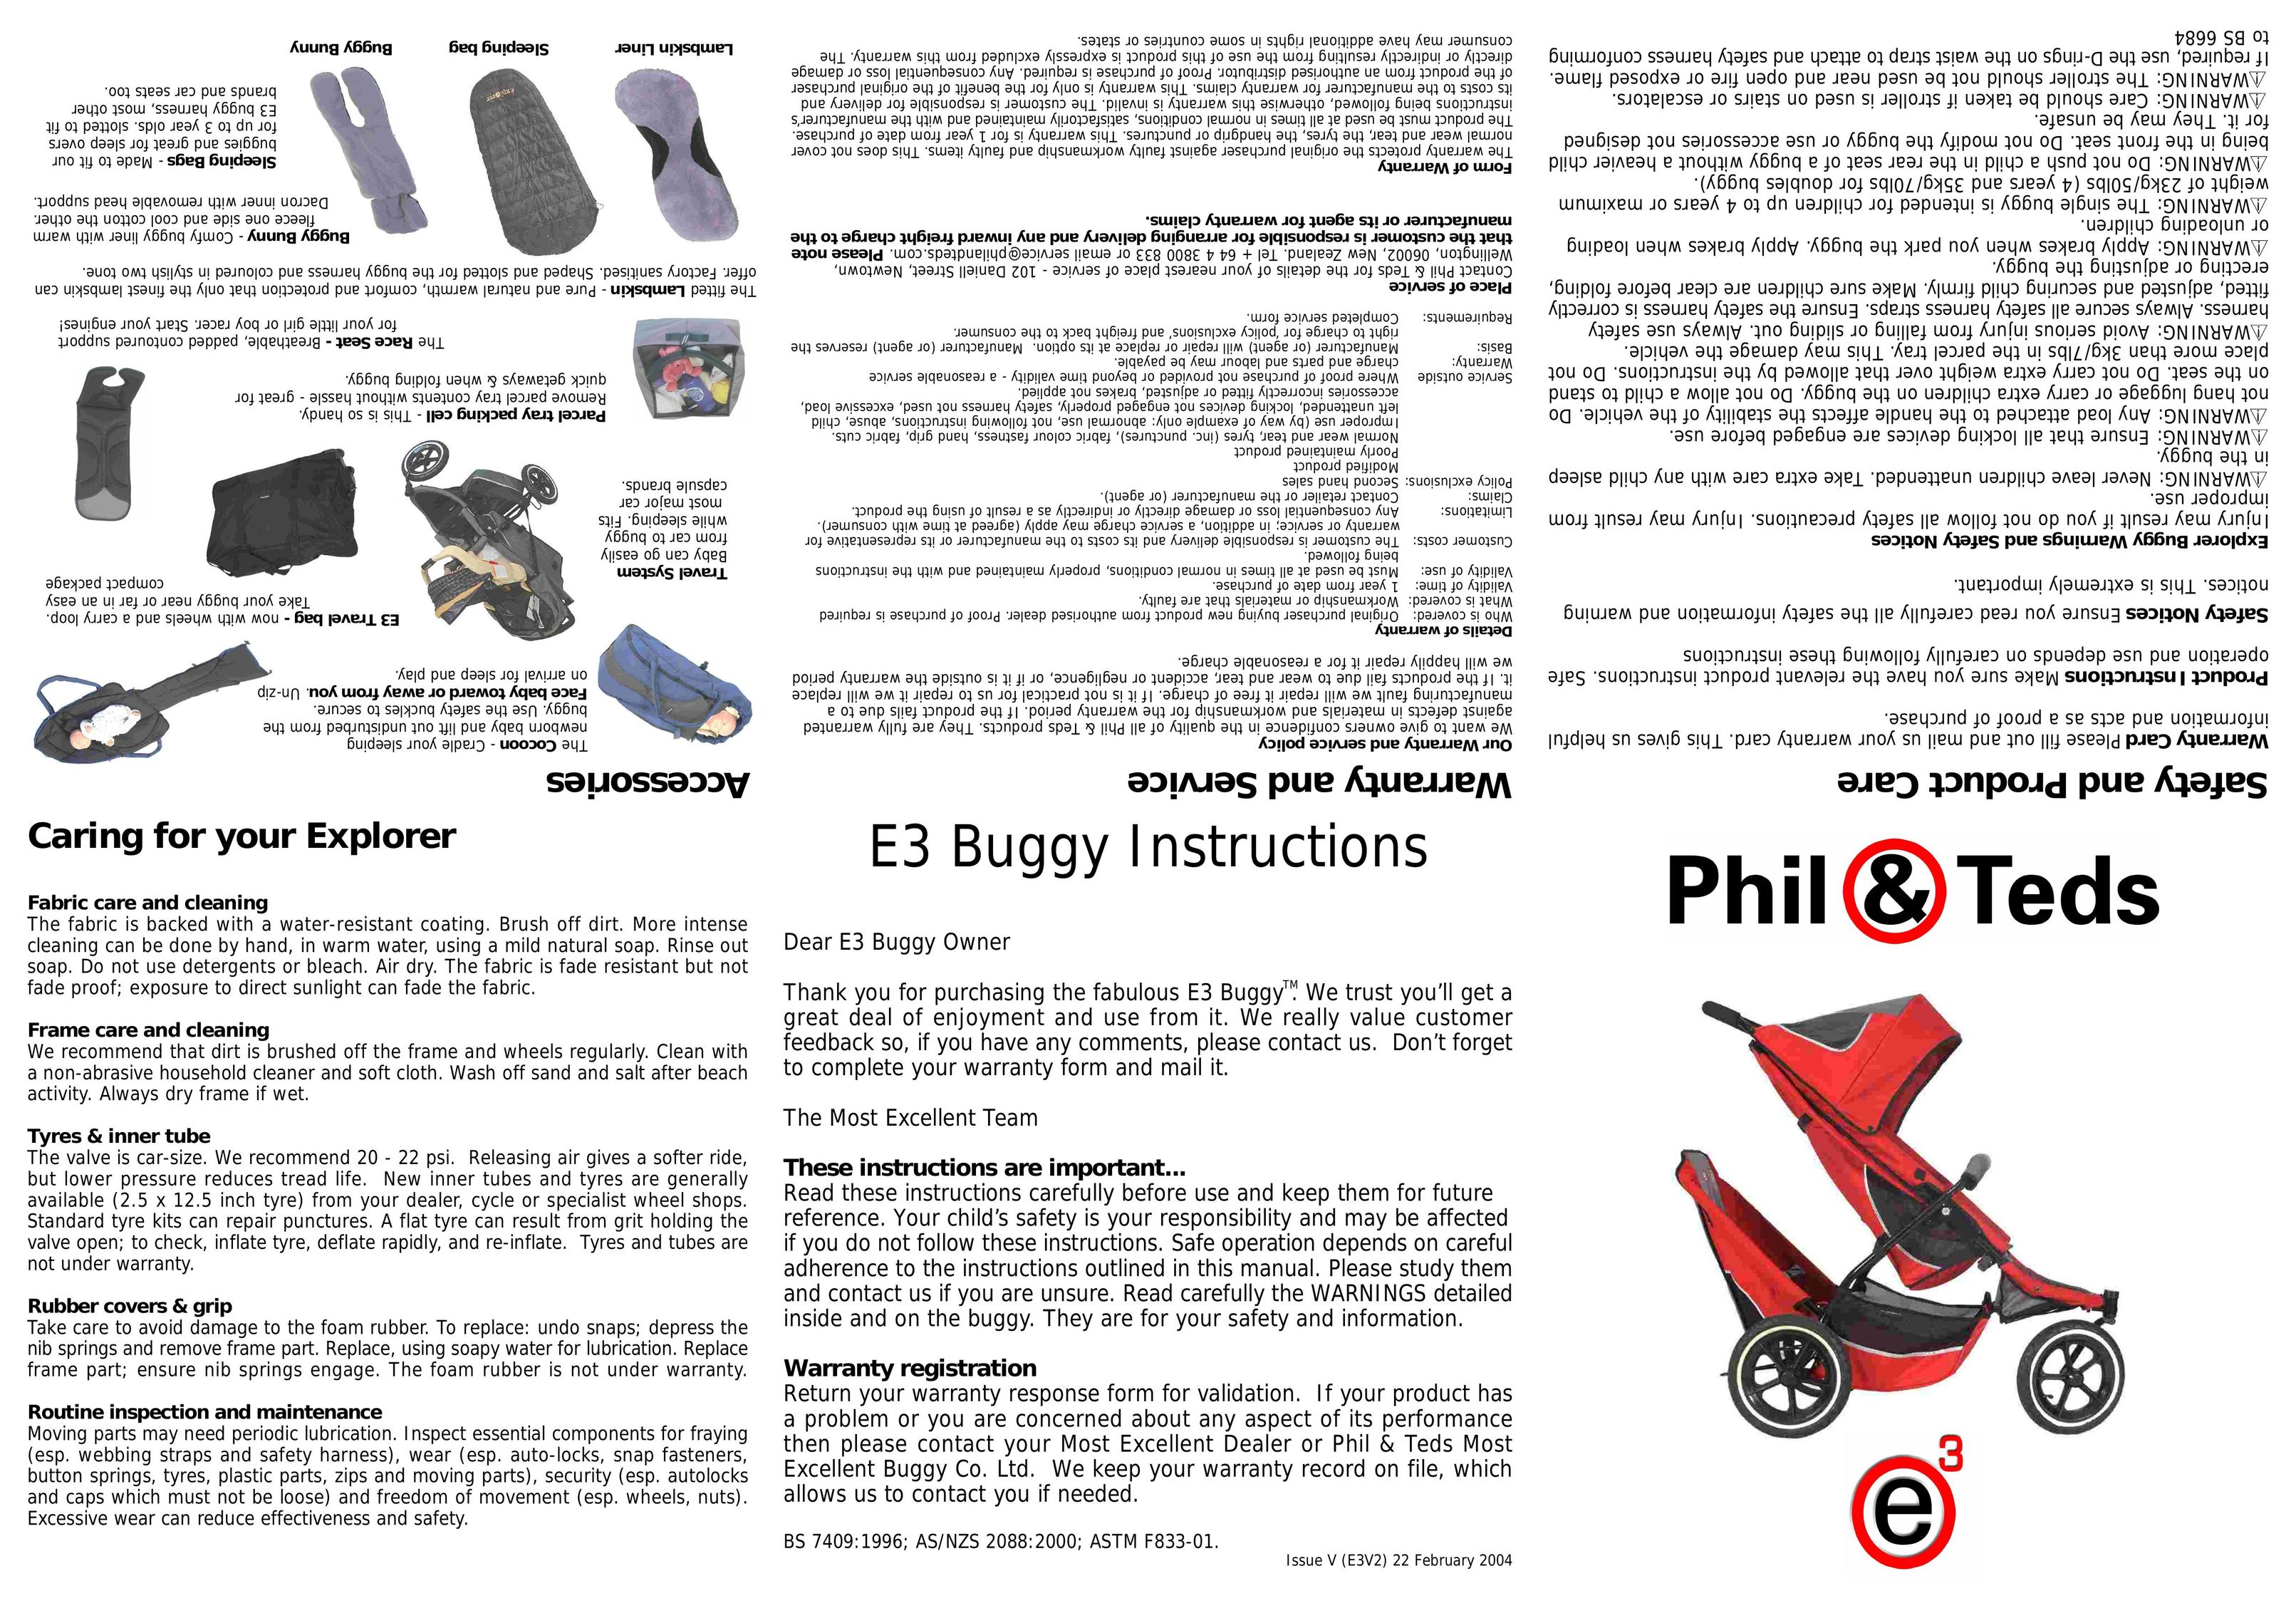 Phil & Teds E3 Stroller User Manual